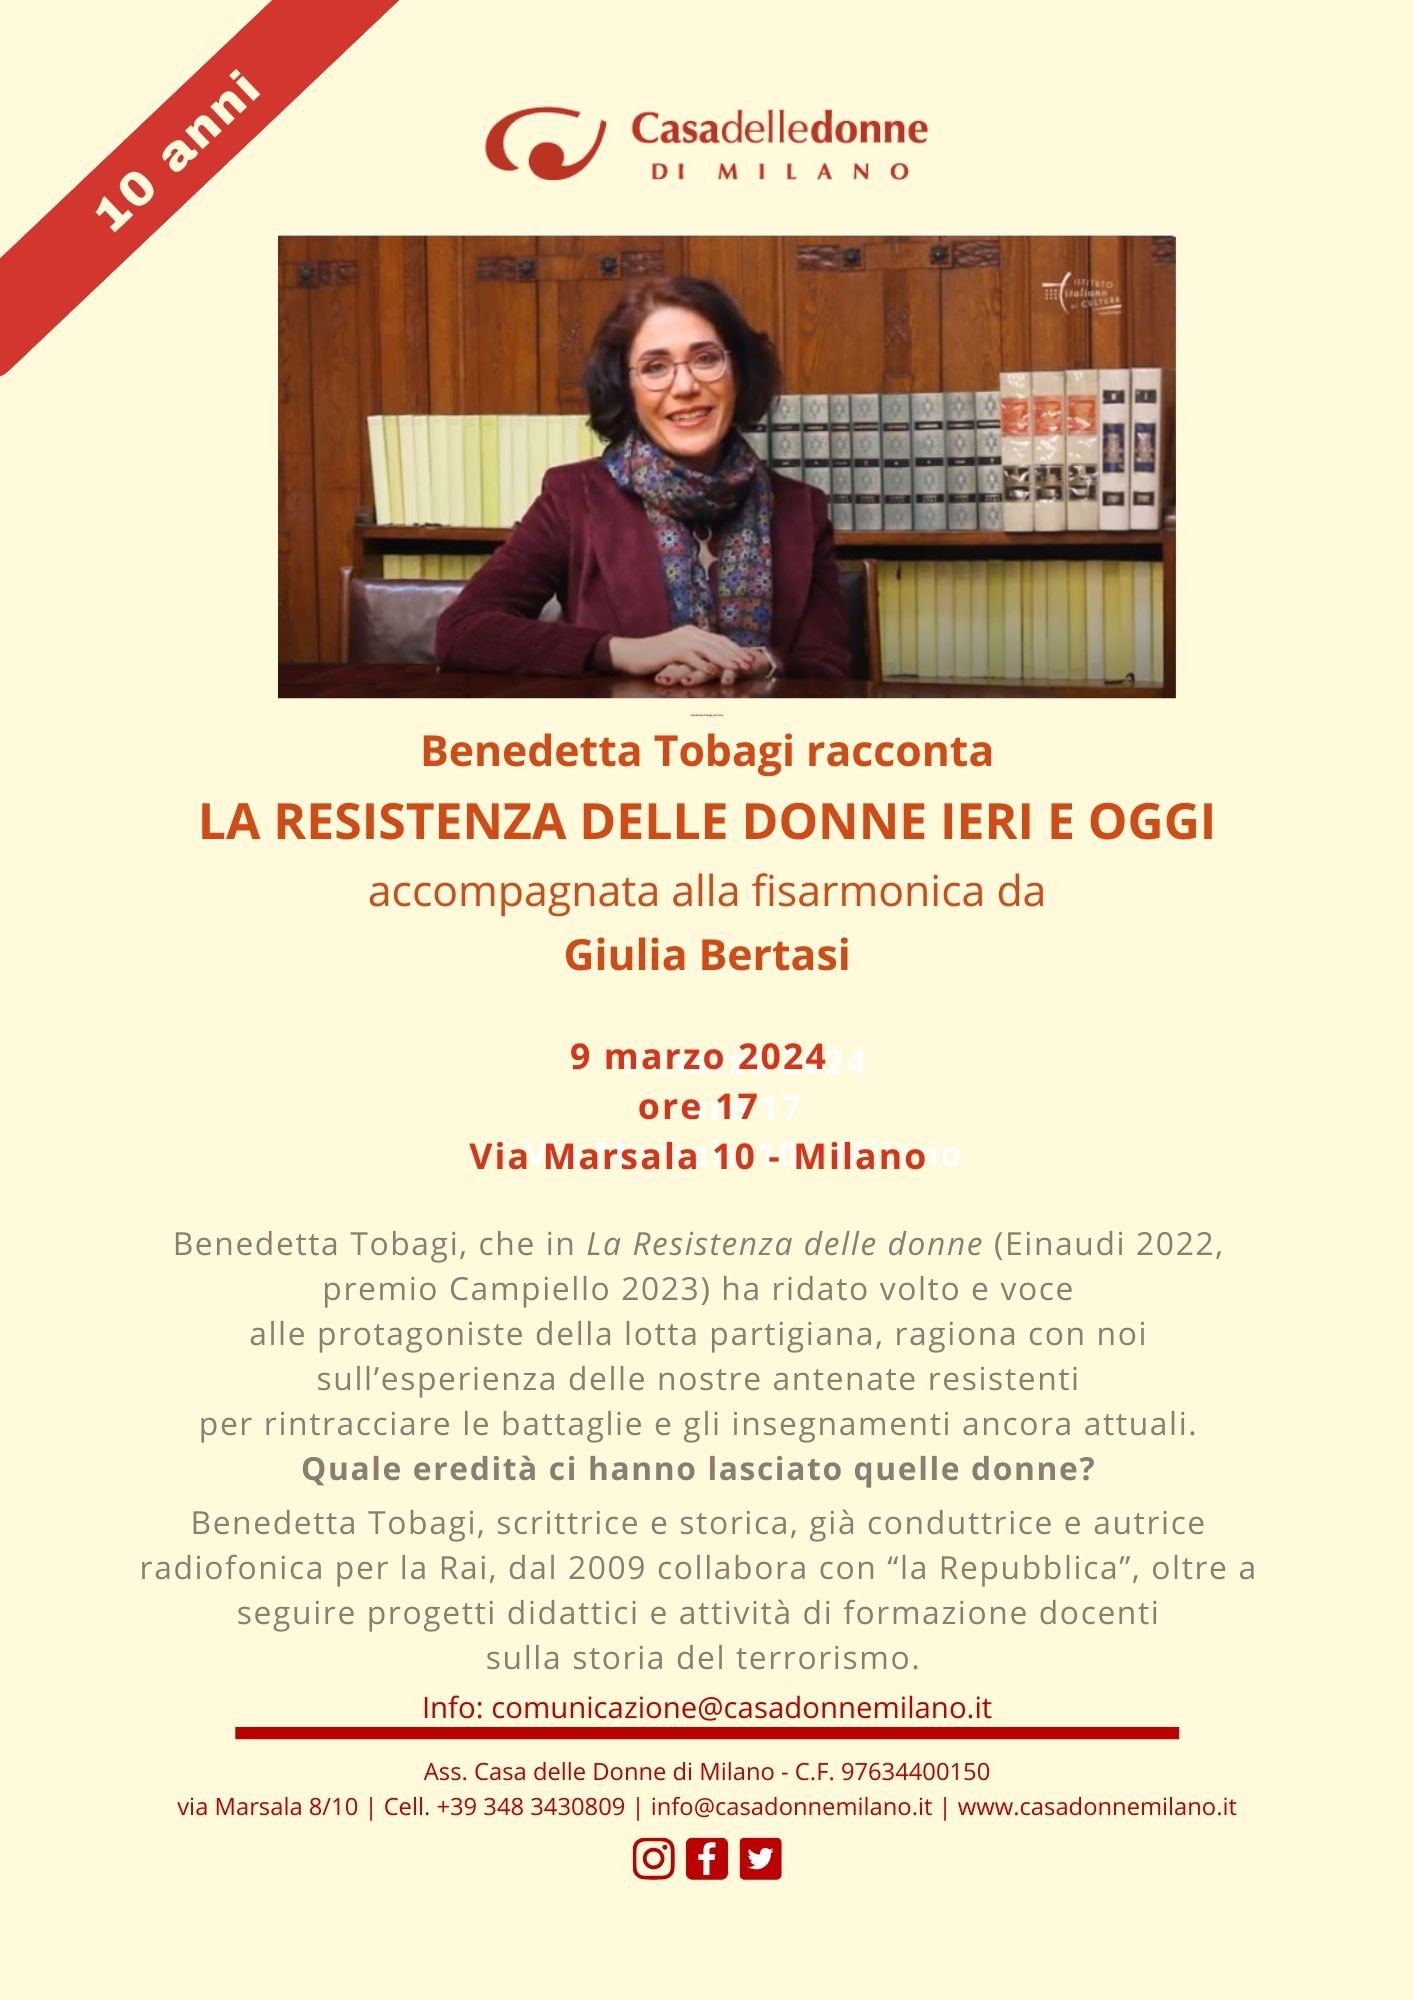 Benedetta Tobagi racconta la Resistenza delle donne ieri e oggi accompagnata alla fisarmonica da Giulia Bertasi @ Casa delle Donne di Milano